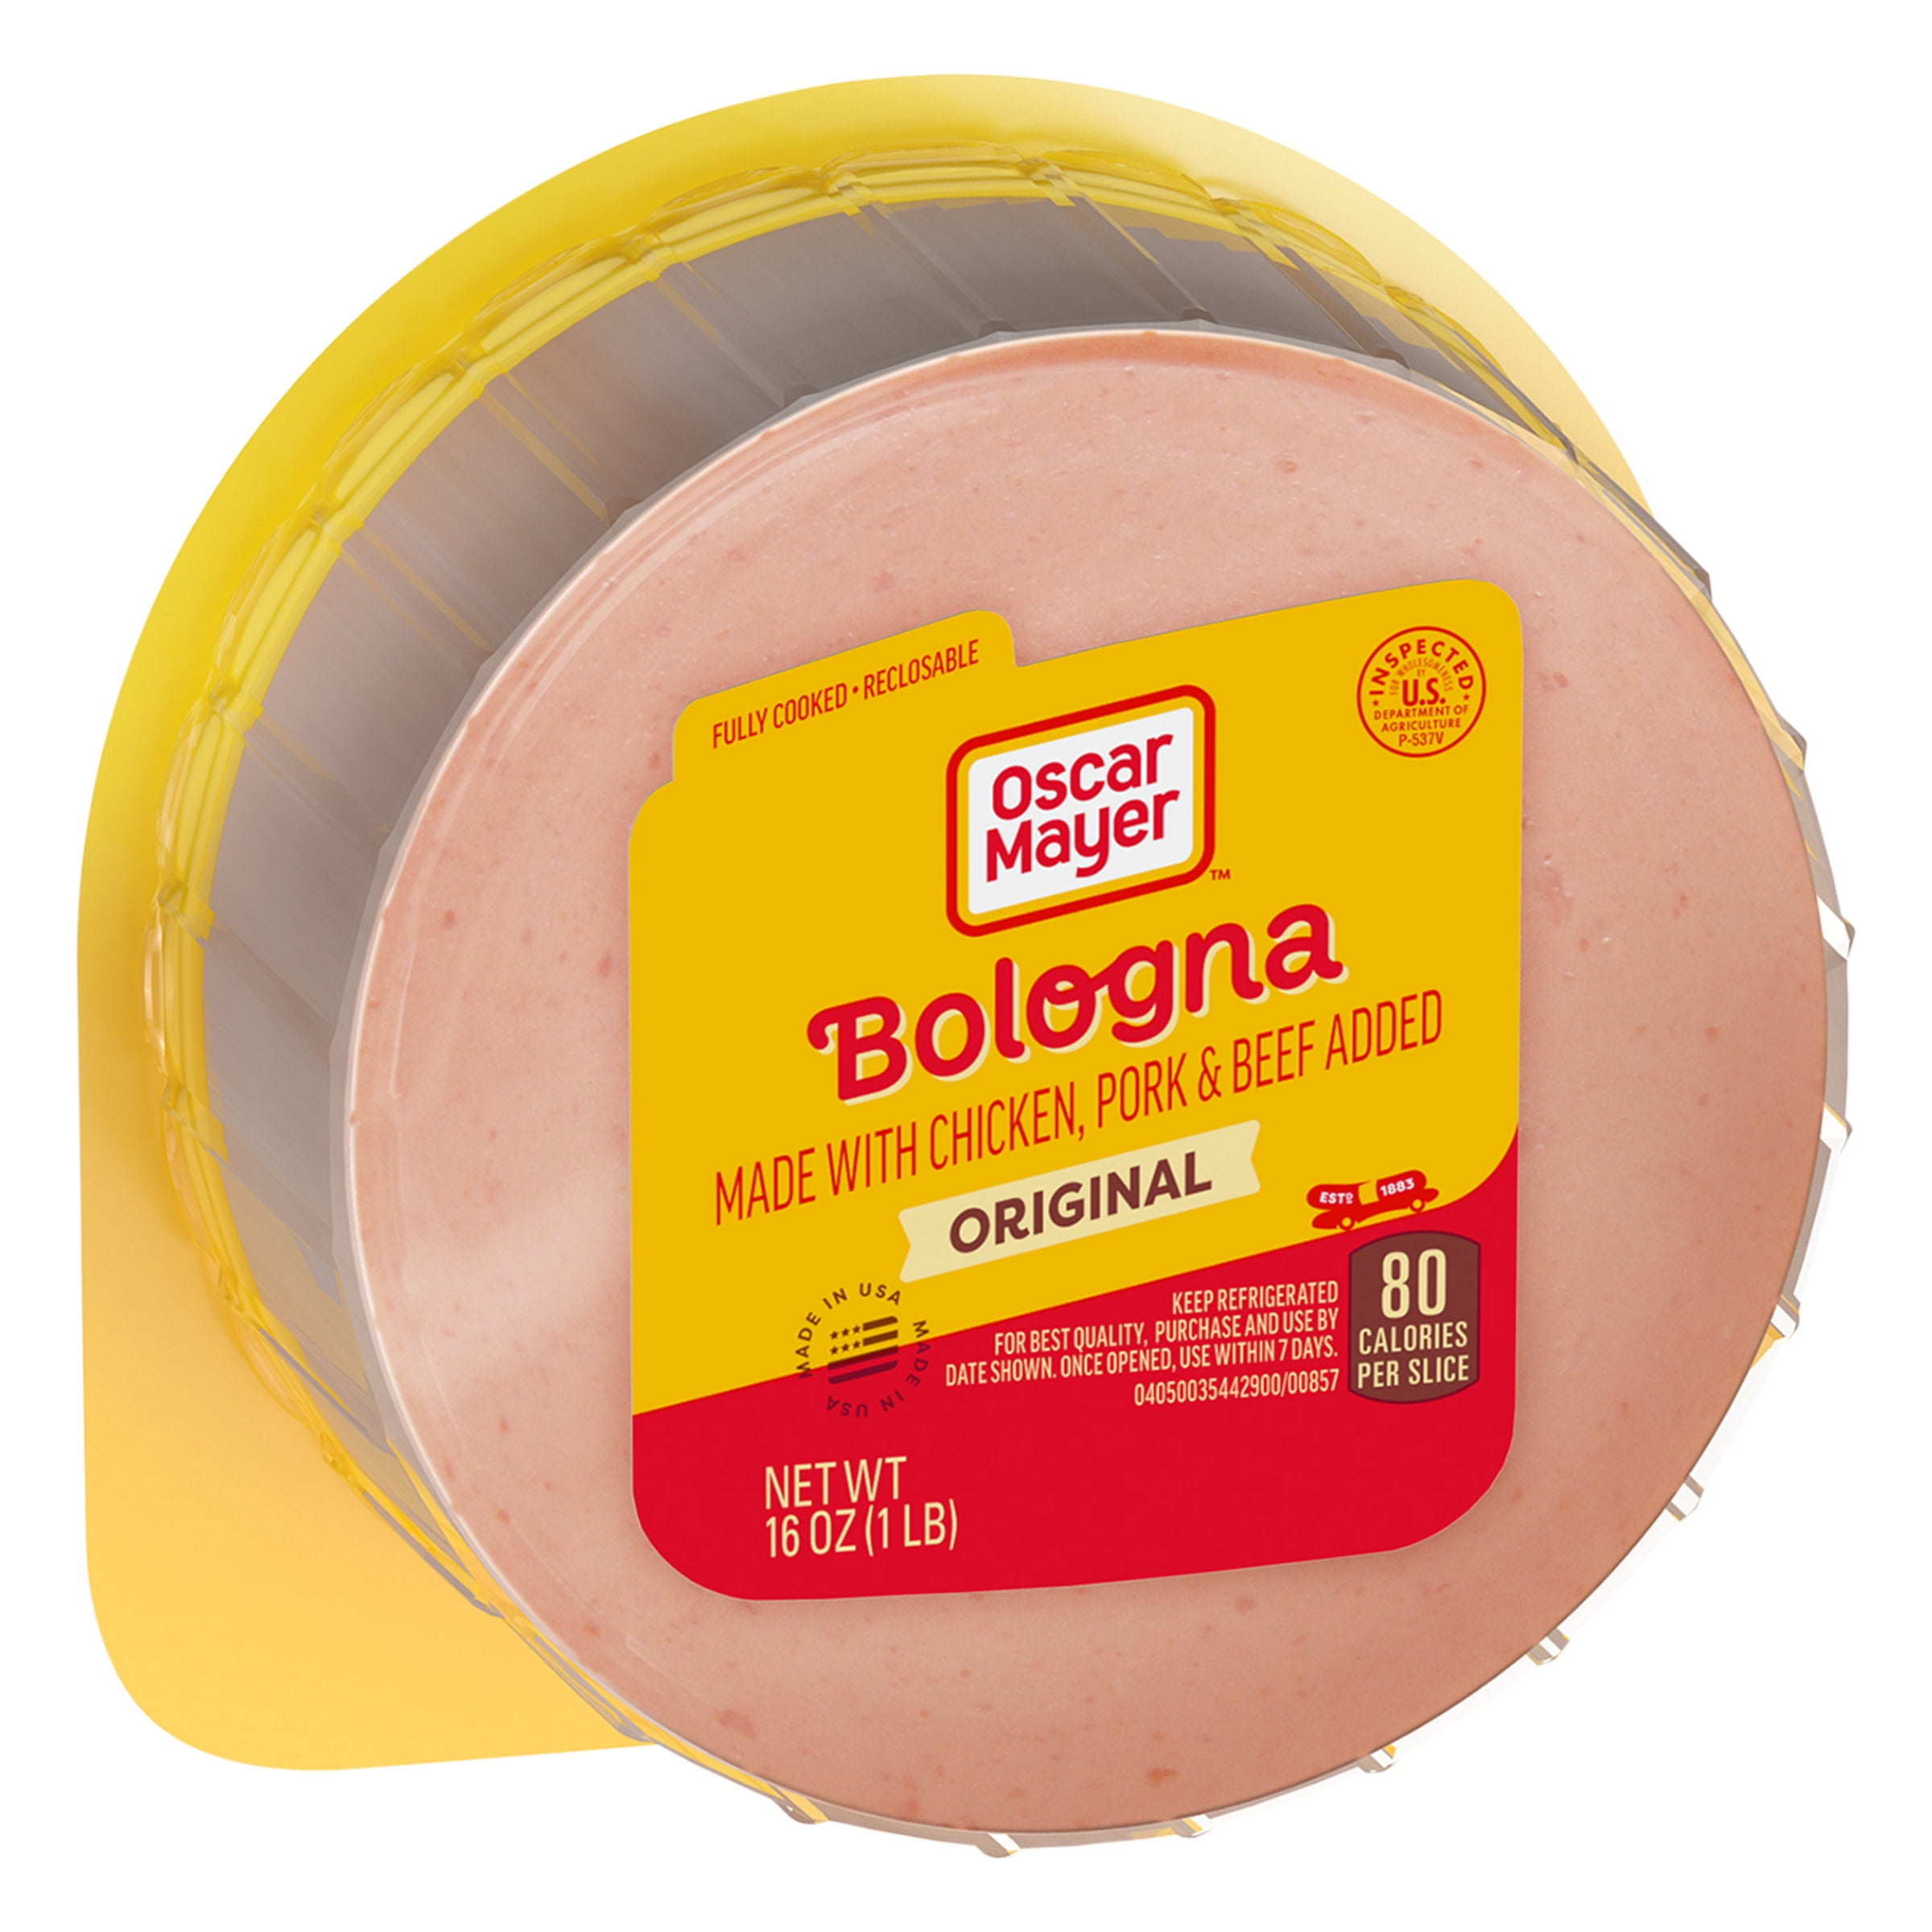 Bologna, Ham, Turkey & Chicken Lunch Meat